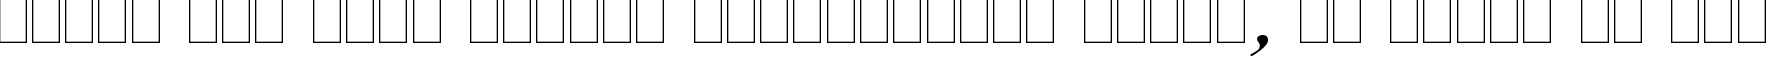 Пример написания шрифтом Caslon Italic:001.001 текста на русском